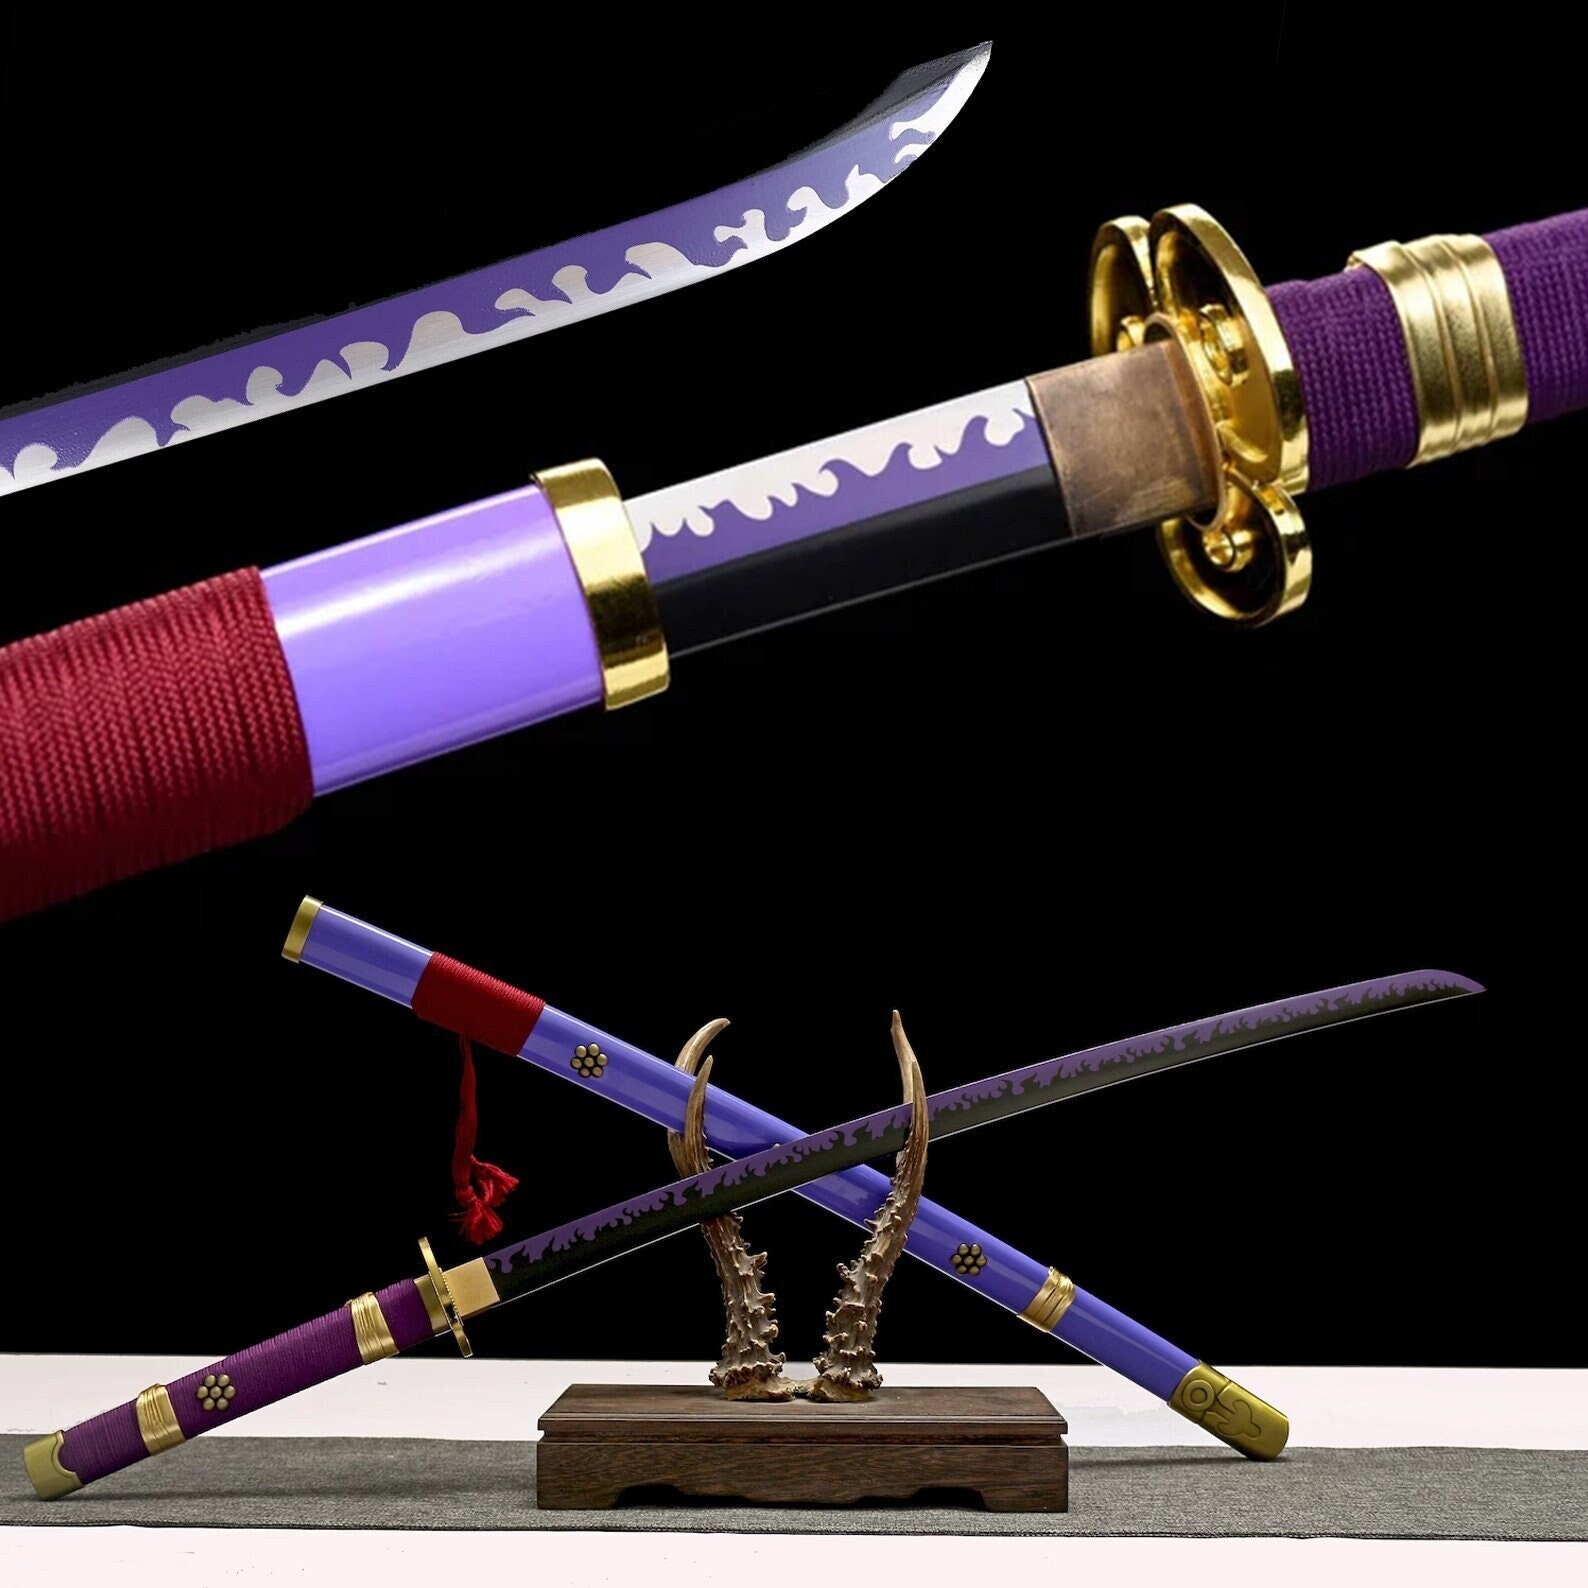 Demon Slayer Cosplay Samurai Sword Anime Swords India  Ubuy